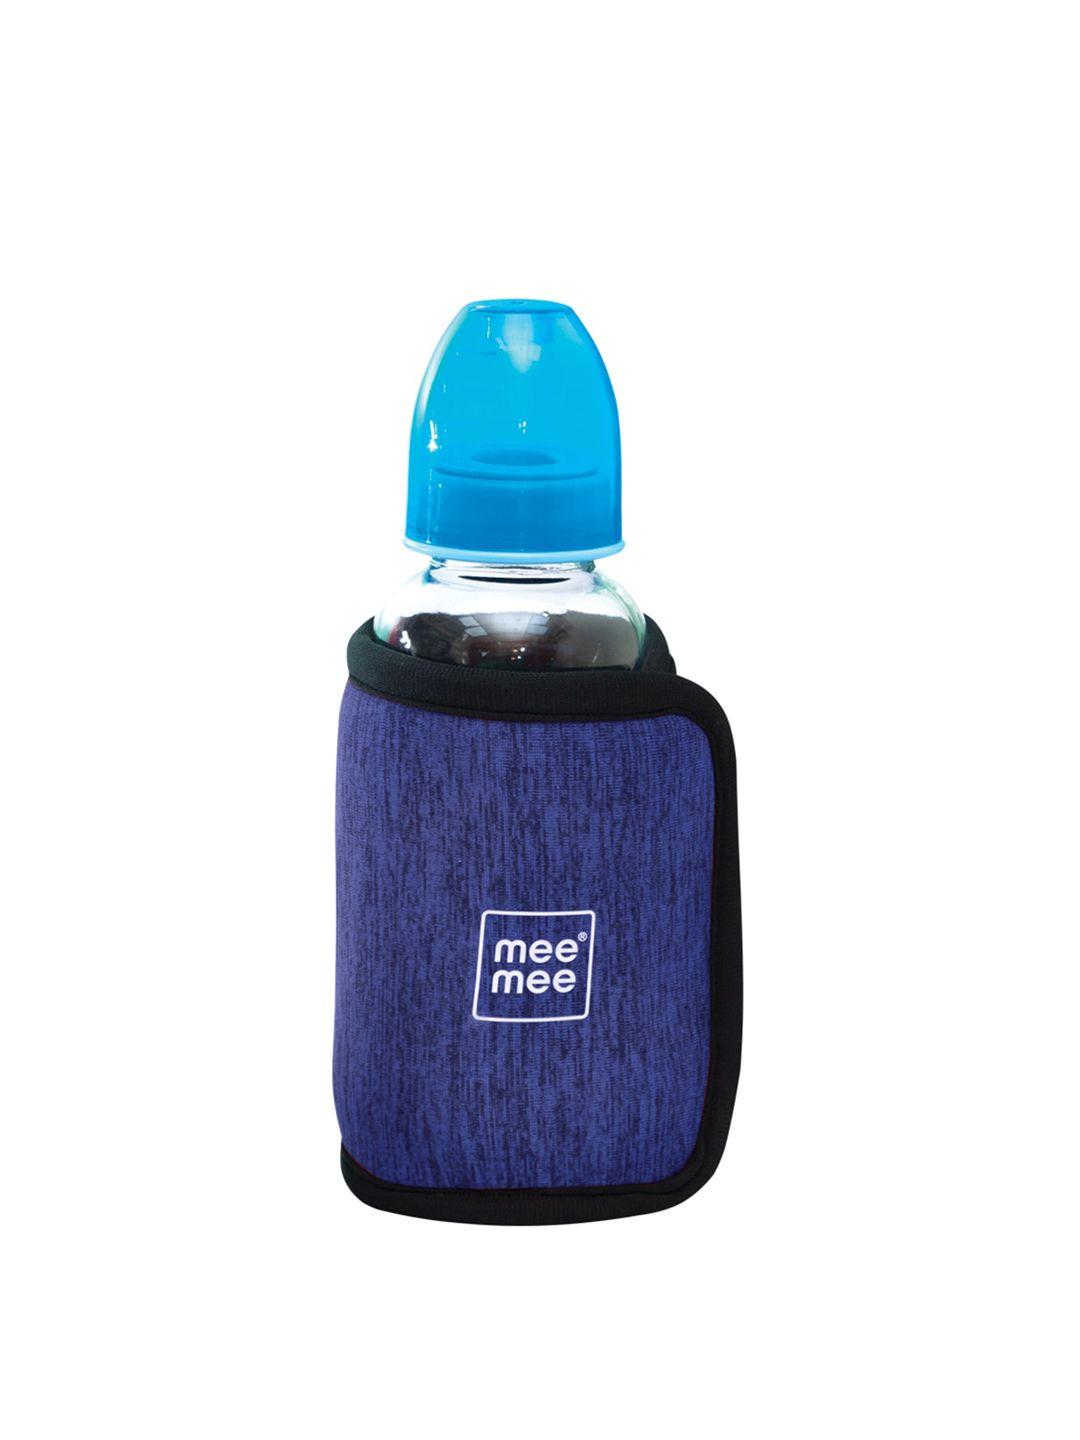 meemee kids blue printed feeding bottle cover